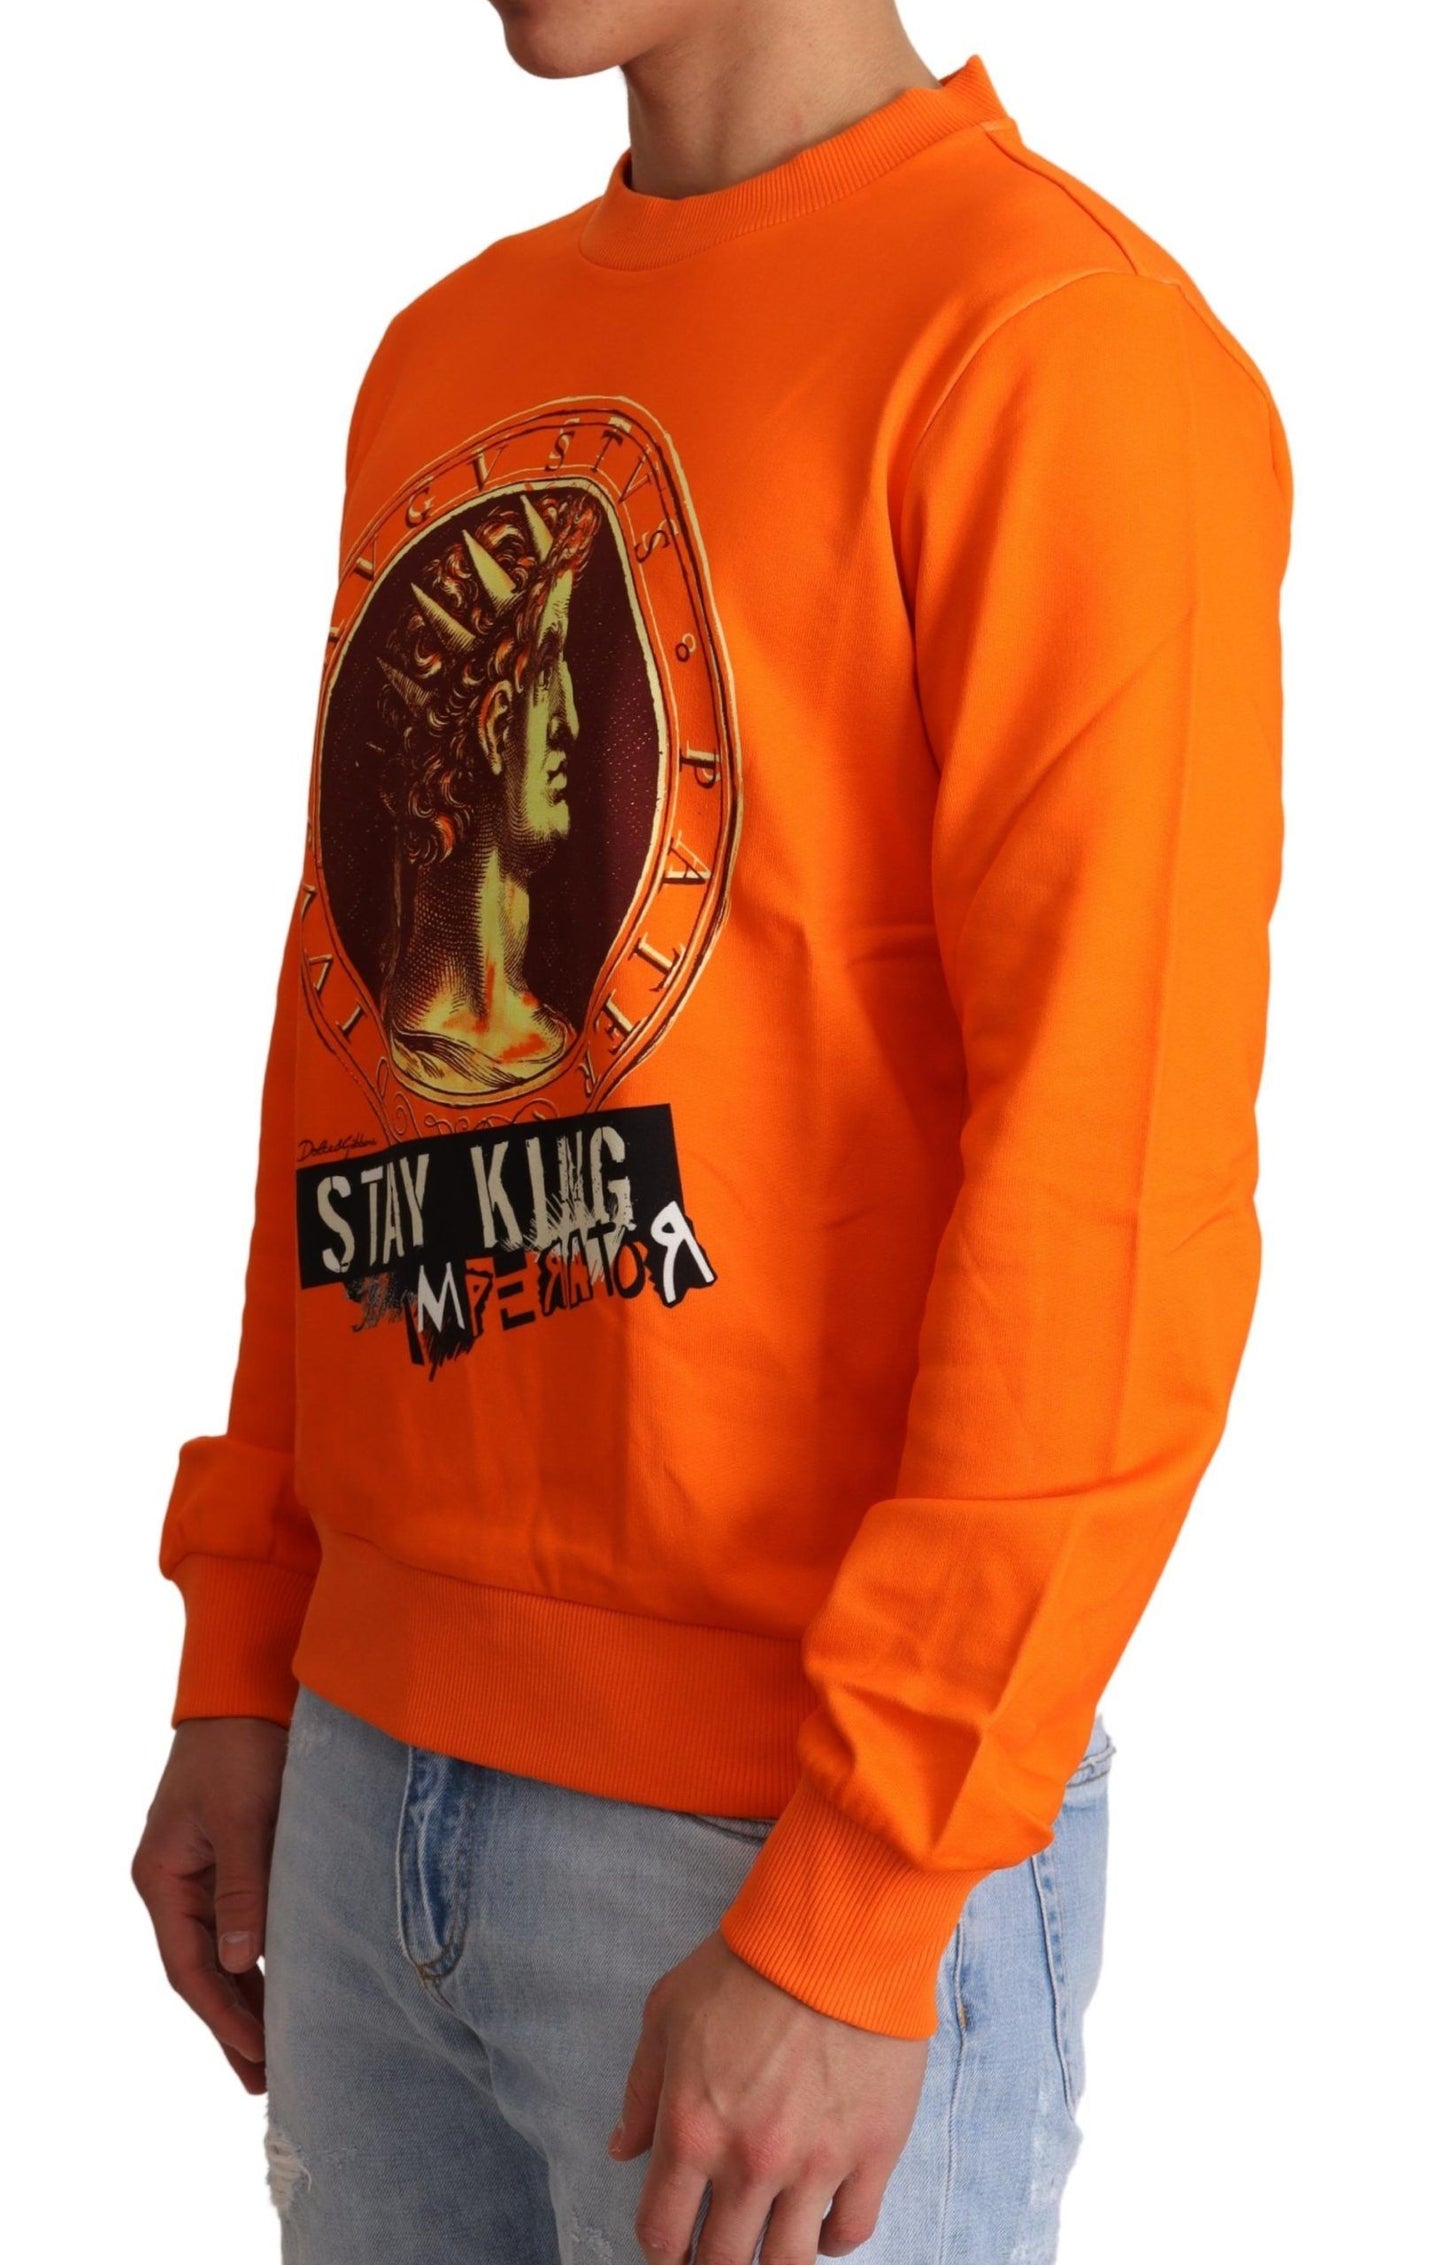 Regal Crewneck Cotton Sweater in Orange